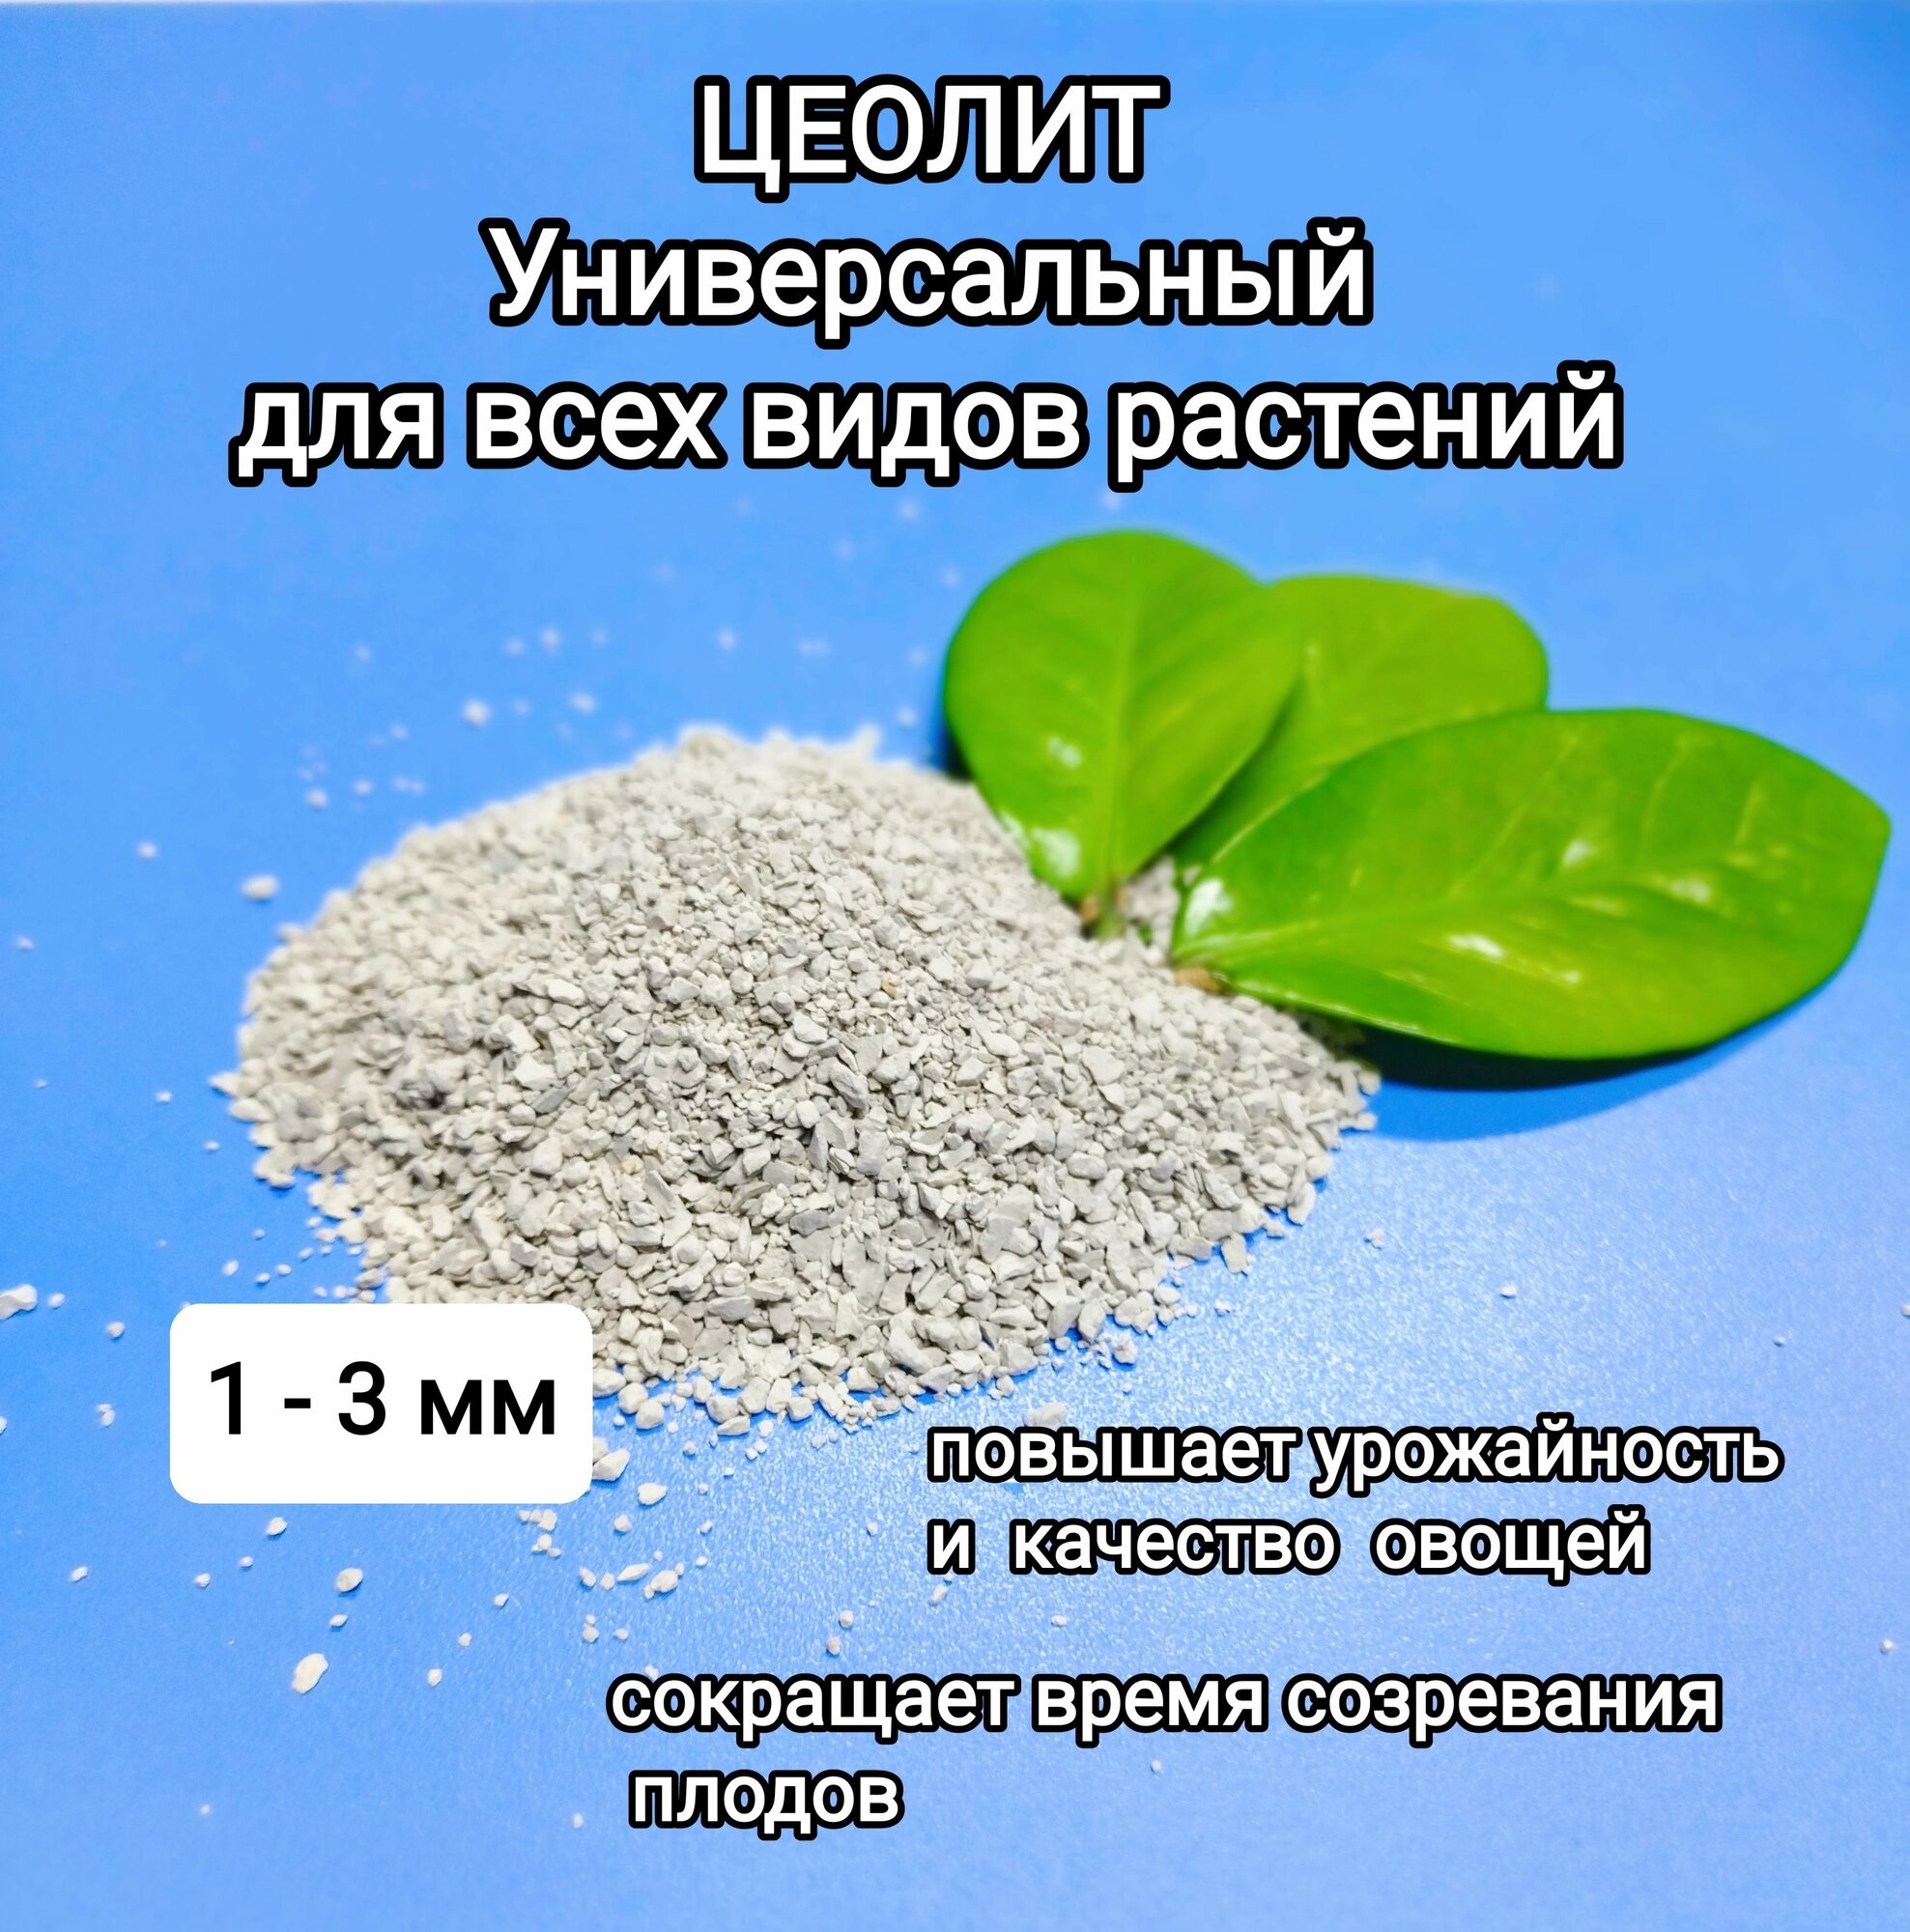 Цеолит универсальный, удобрение для всех видов растений, фракция 1-3 мм.